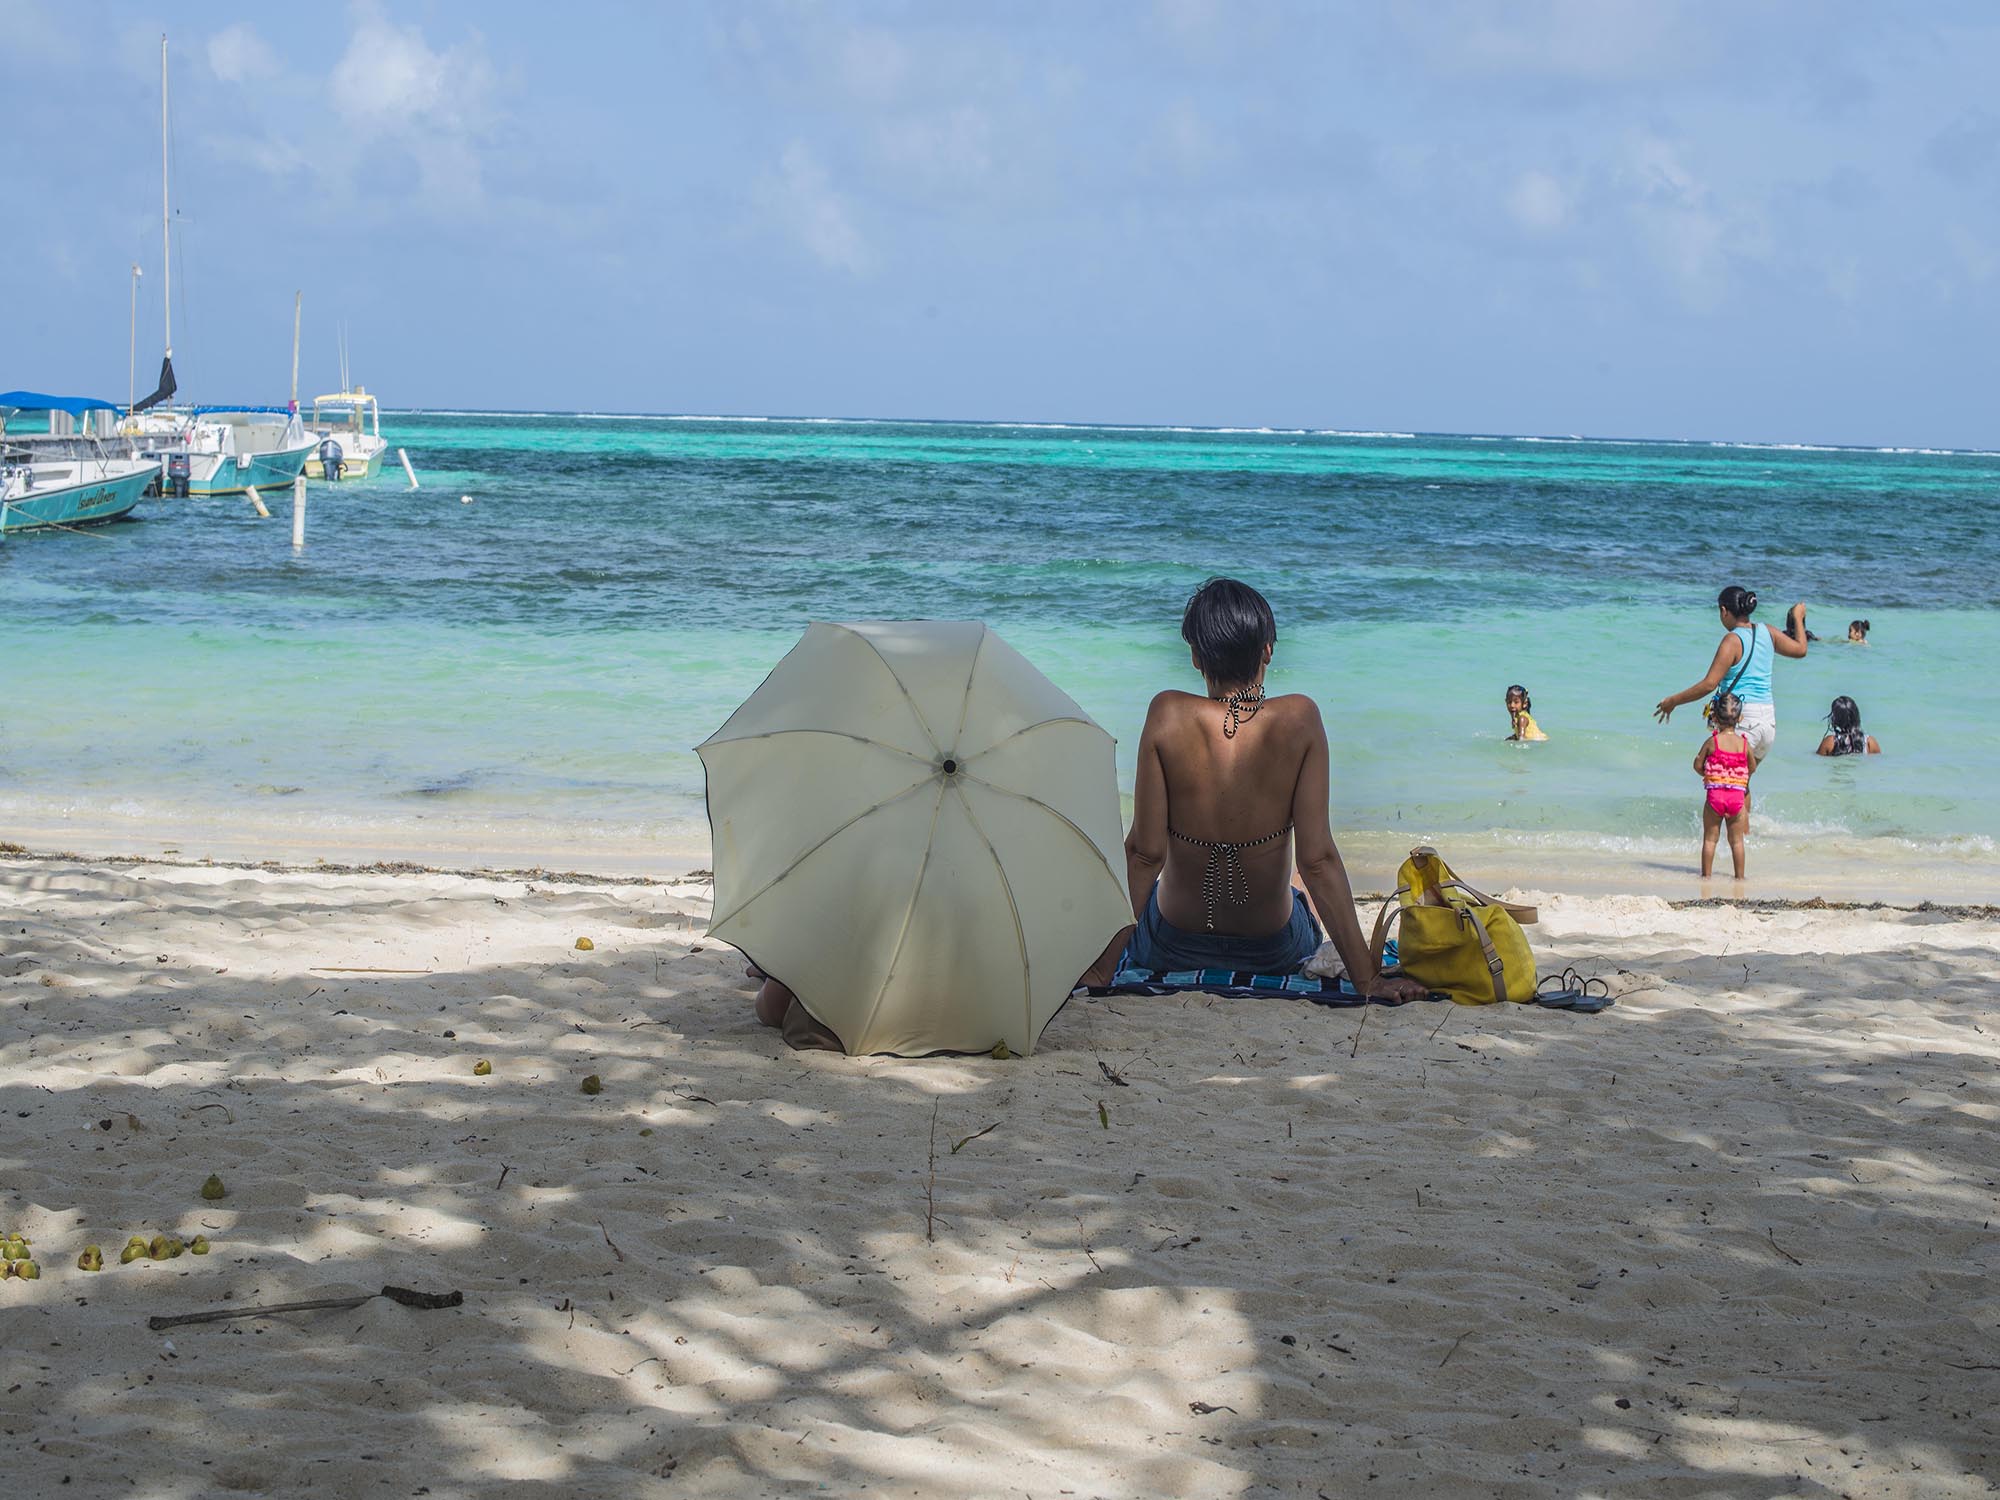 Warum Sie Belize für eine Post-Covid-Reise in Betracht ziehen sollten